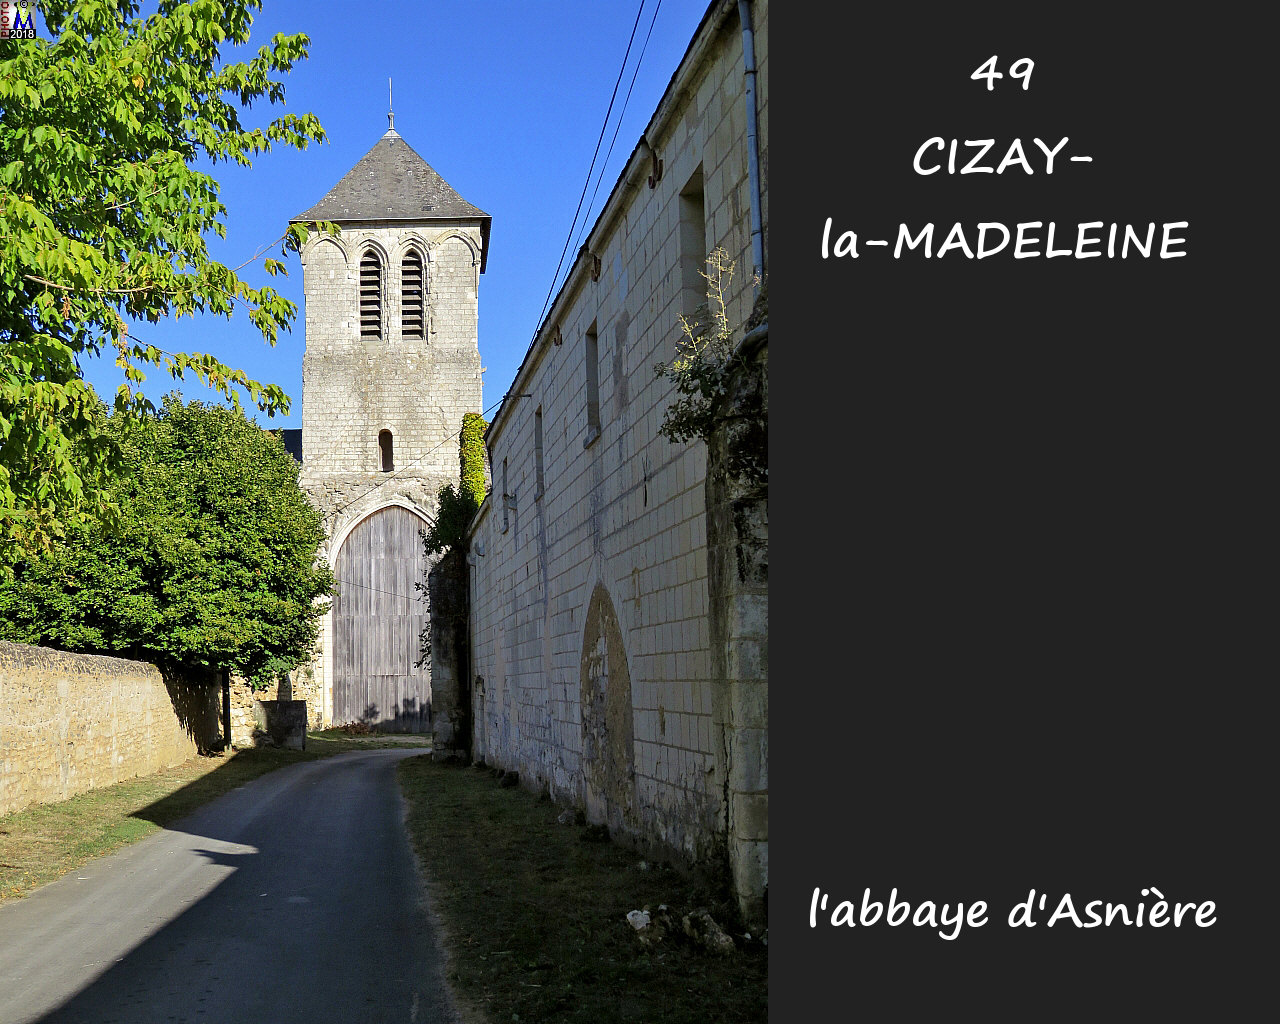 49CIZAY-MADELEINE_abbaye_1004.jpg